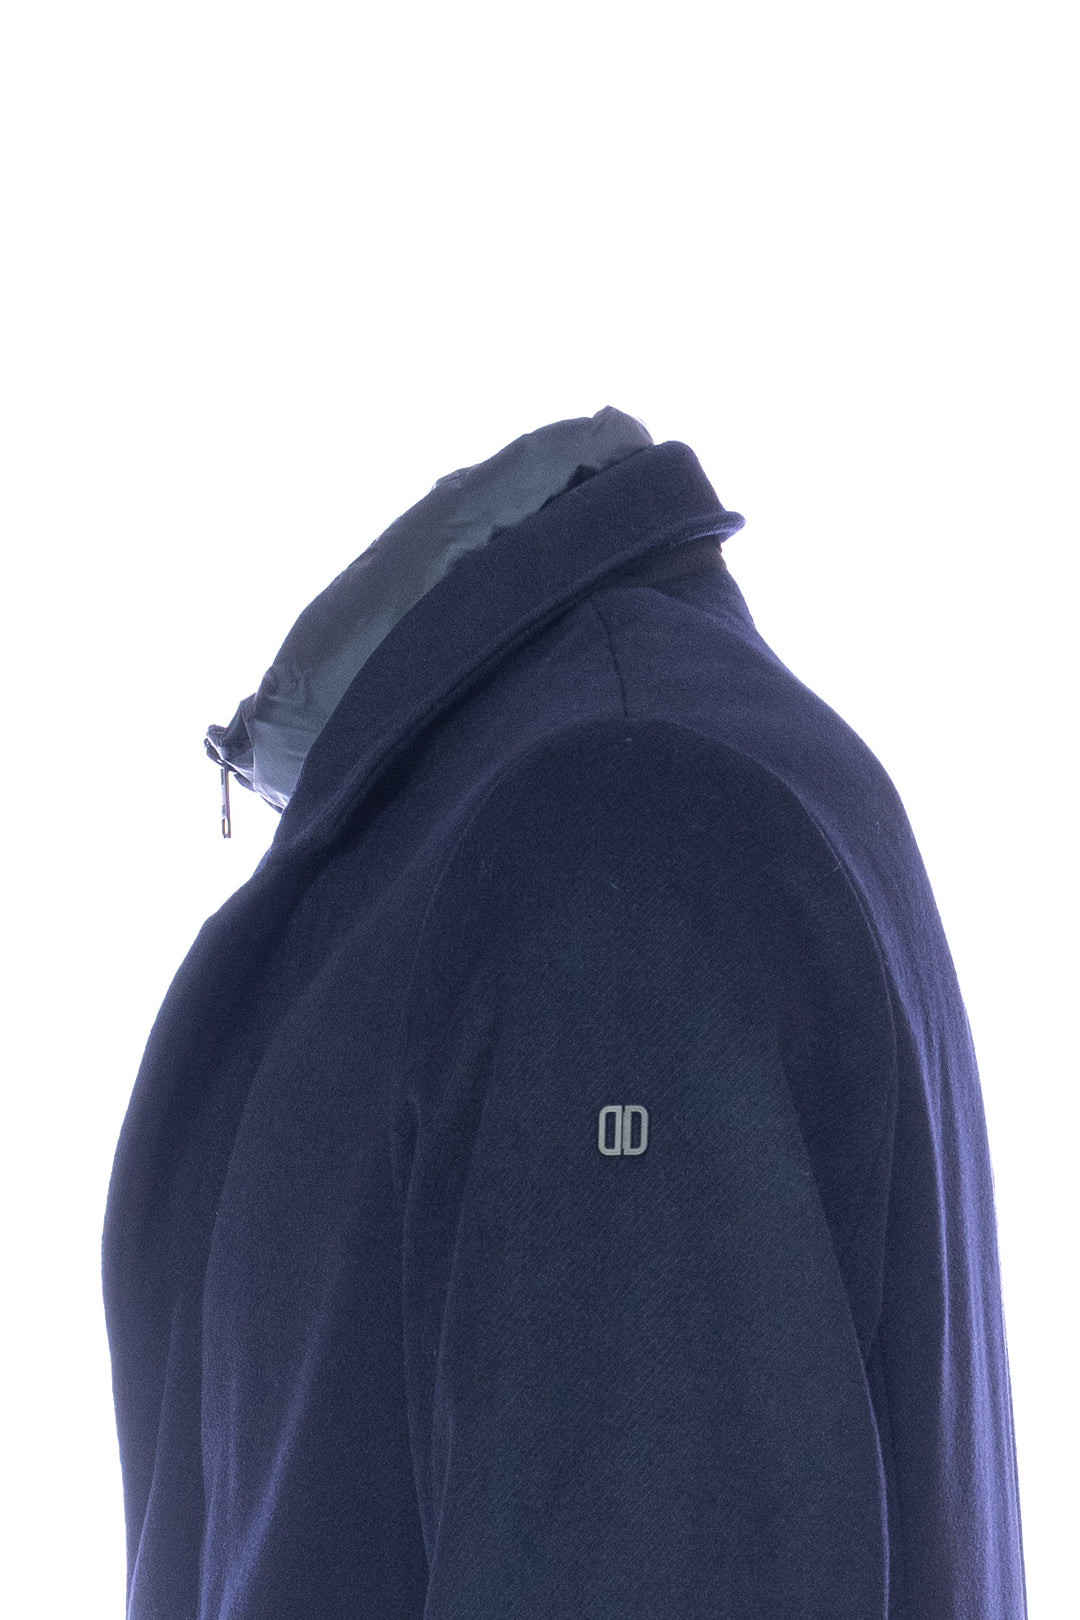 DUNO Cappotto imbottito blu scuro in lana tecnica con pettorina rimovibile - Mancinelli 1954